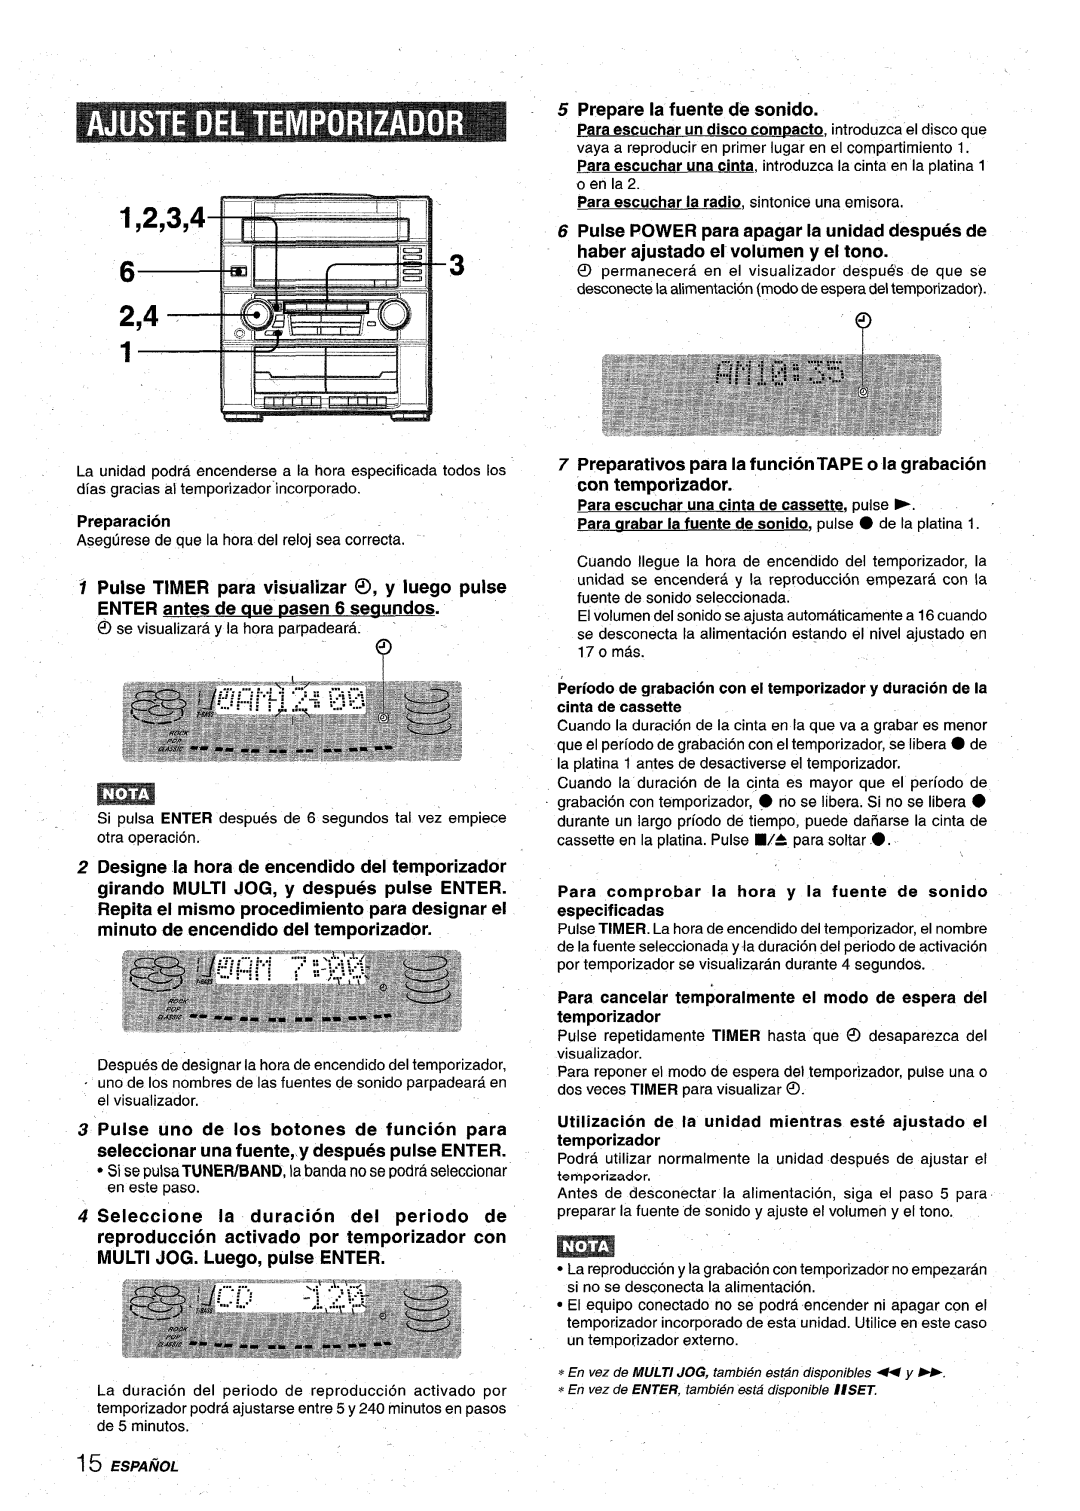 Aiwa XR-M75 manual ’2’3’4-a’, con temporizador, StsepulsaTUNER/BAND,labandanosePodraseleccionar en este paso 